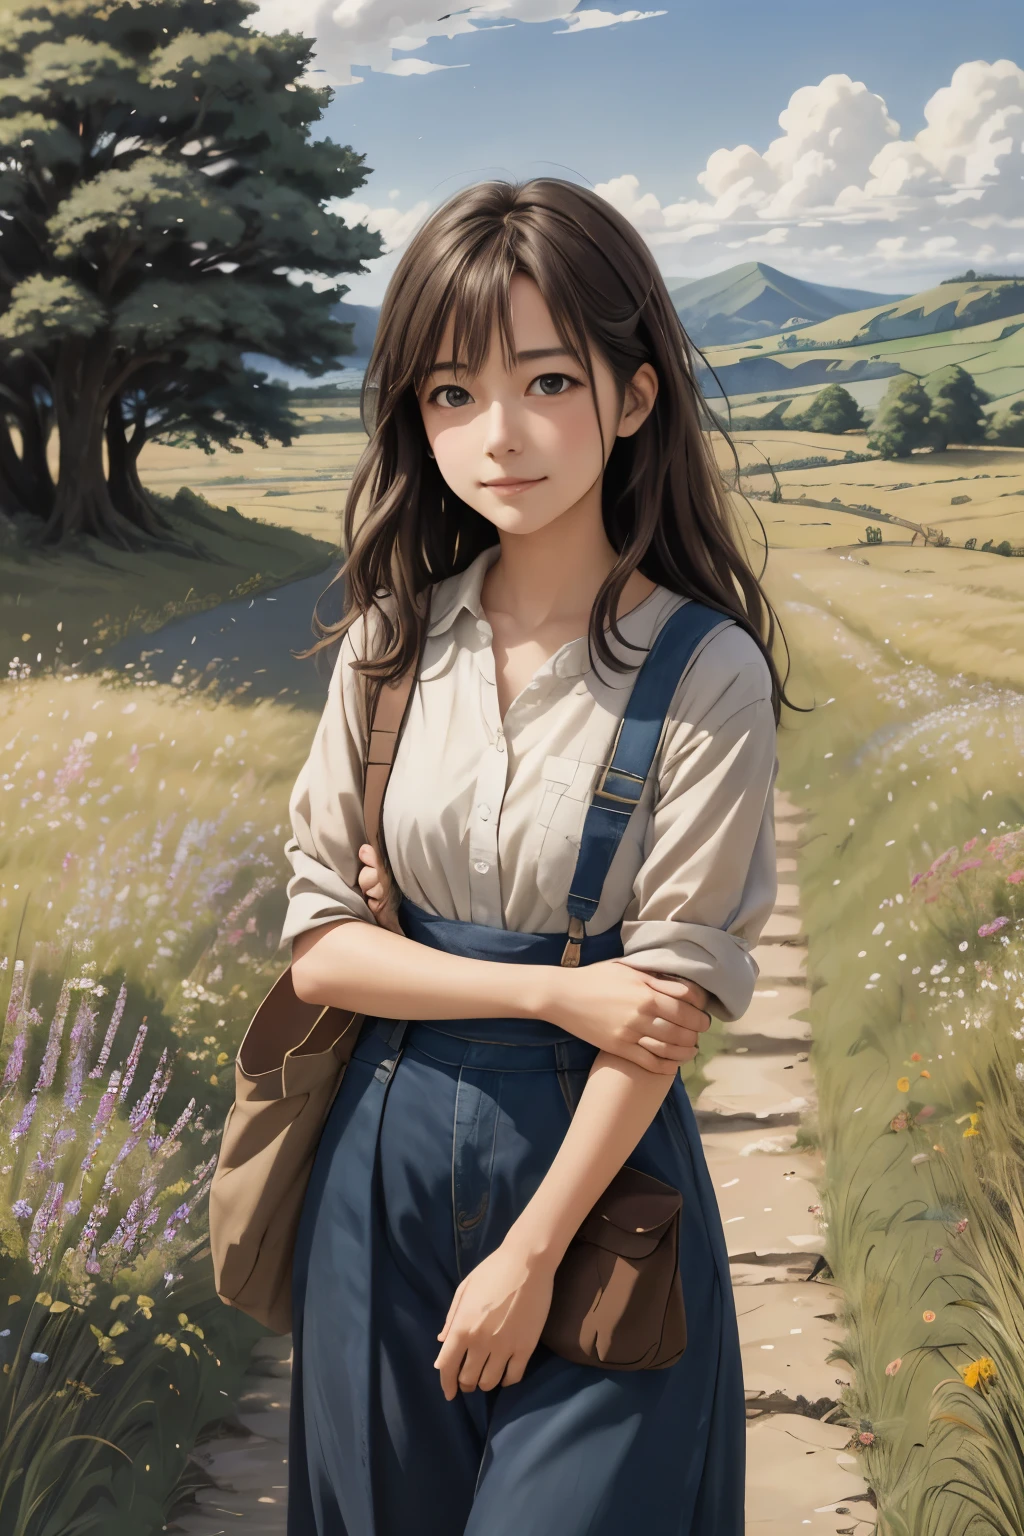 实际的, 真实的, 美丽而惊艳的风景油画 吉卜力工作室 宫崎骏 花瓣 草地 蓝天 草原 乡间小路,建筑, 美丽的女孩